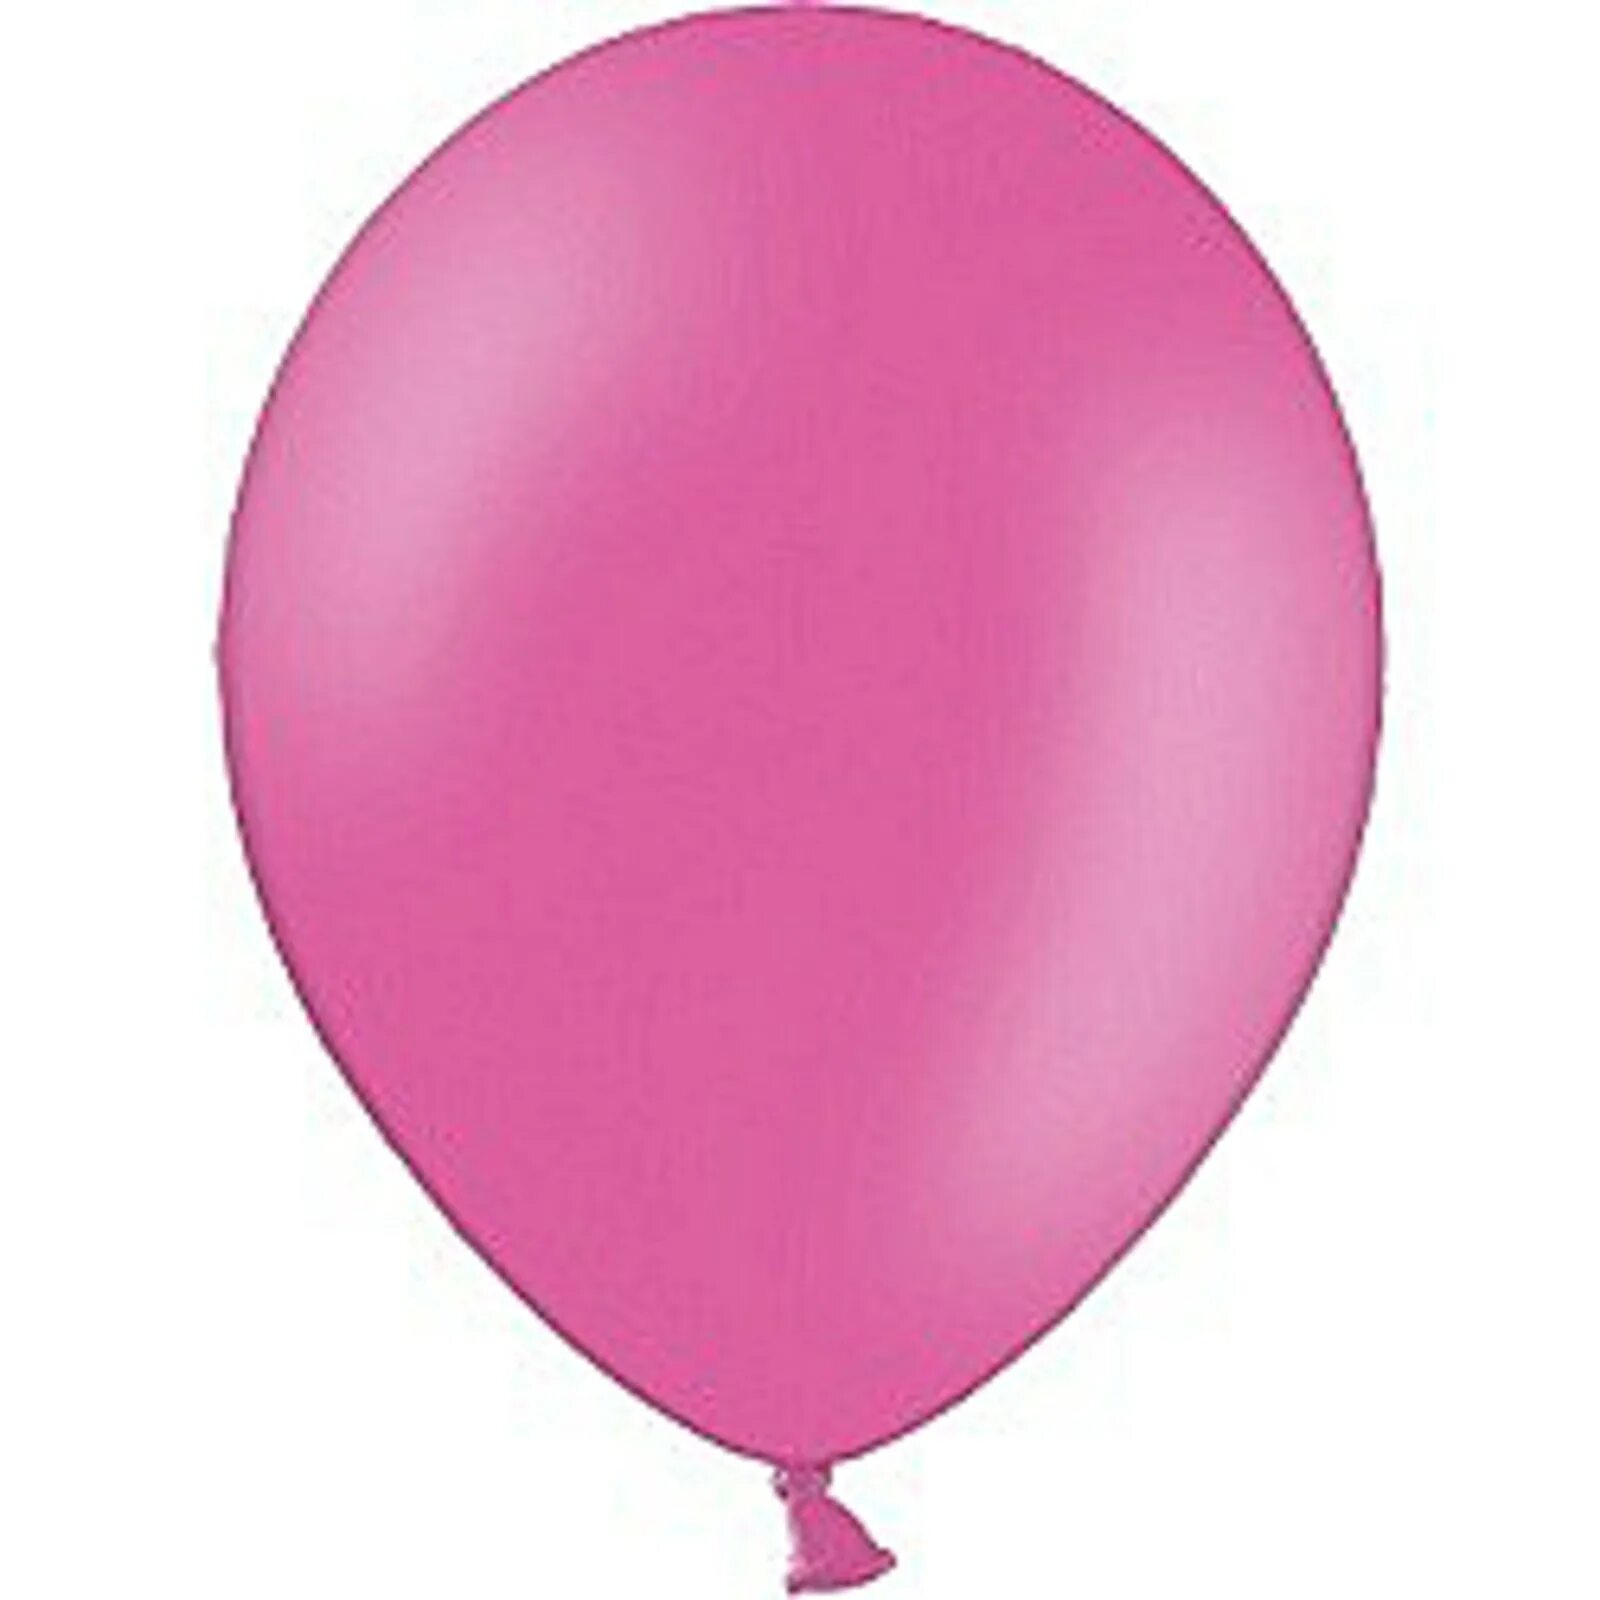 Шарики воздушные 10 см. Пастель красный шар Белбал. Шар Белбал Экстра розовый. Красный воздушный шарик. Круглый воздушный шар.